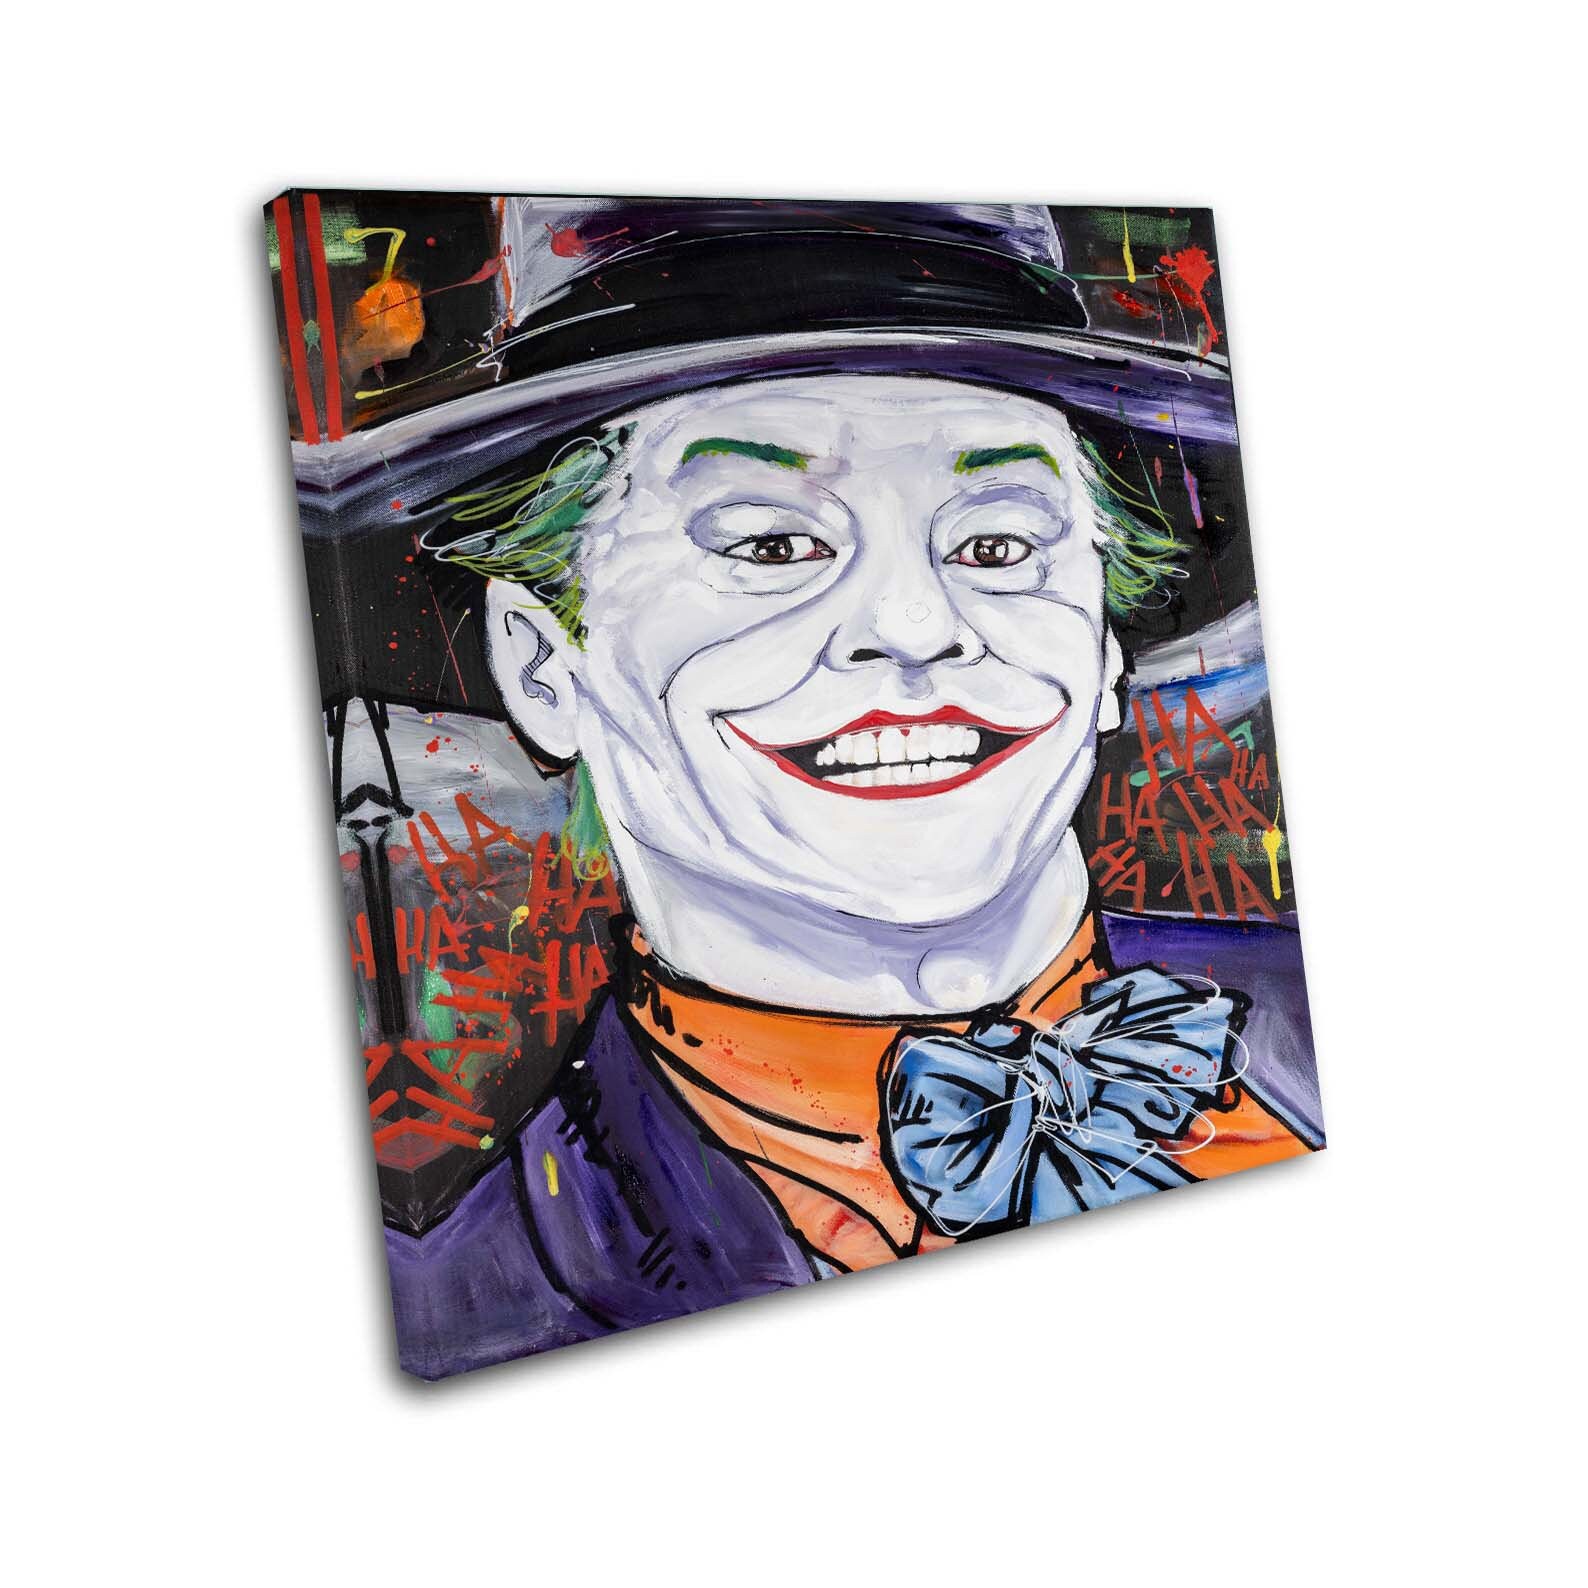 Joker From Batman Canvas Prints Wall Decor Canvas Wall Art - Etsy UK